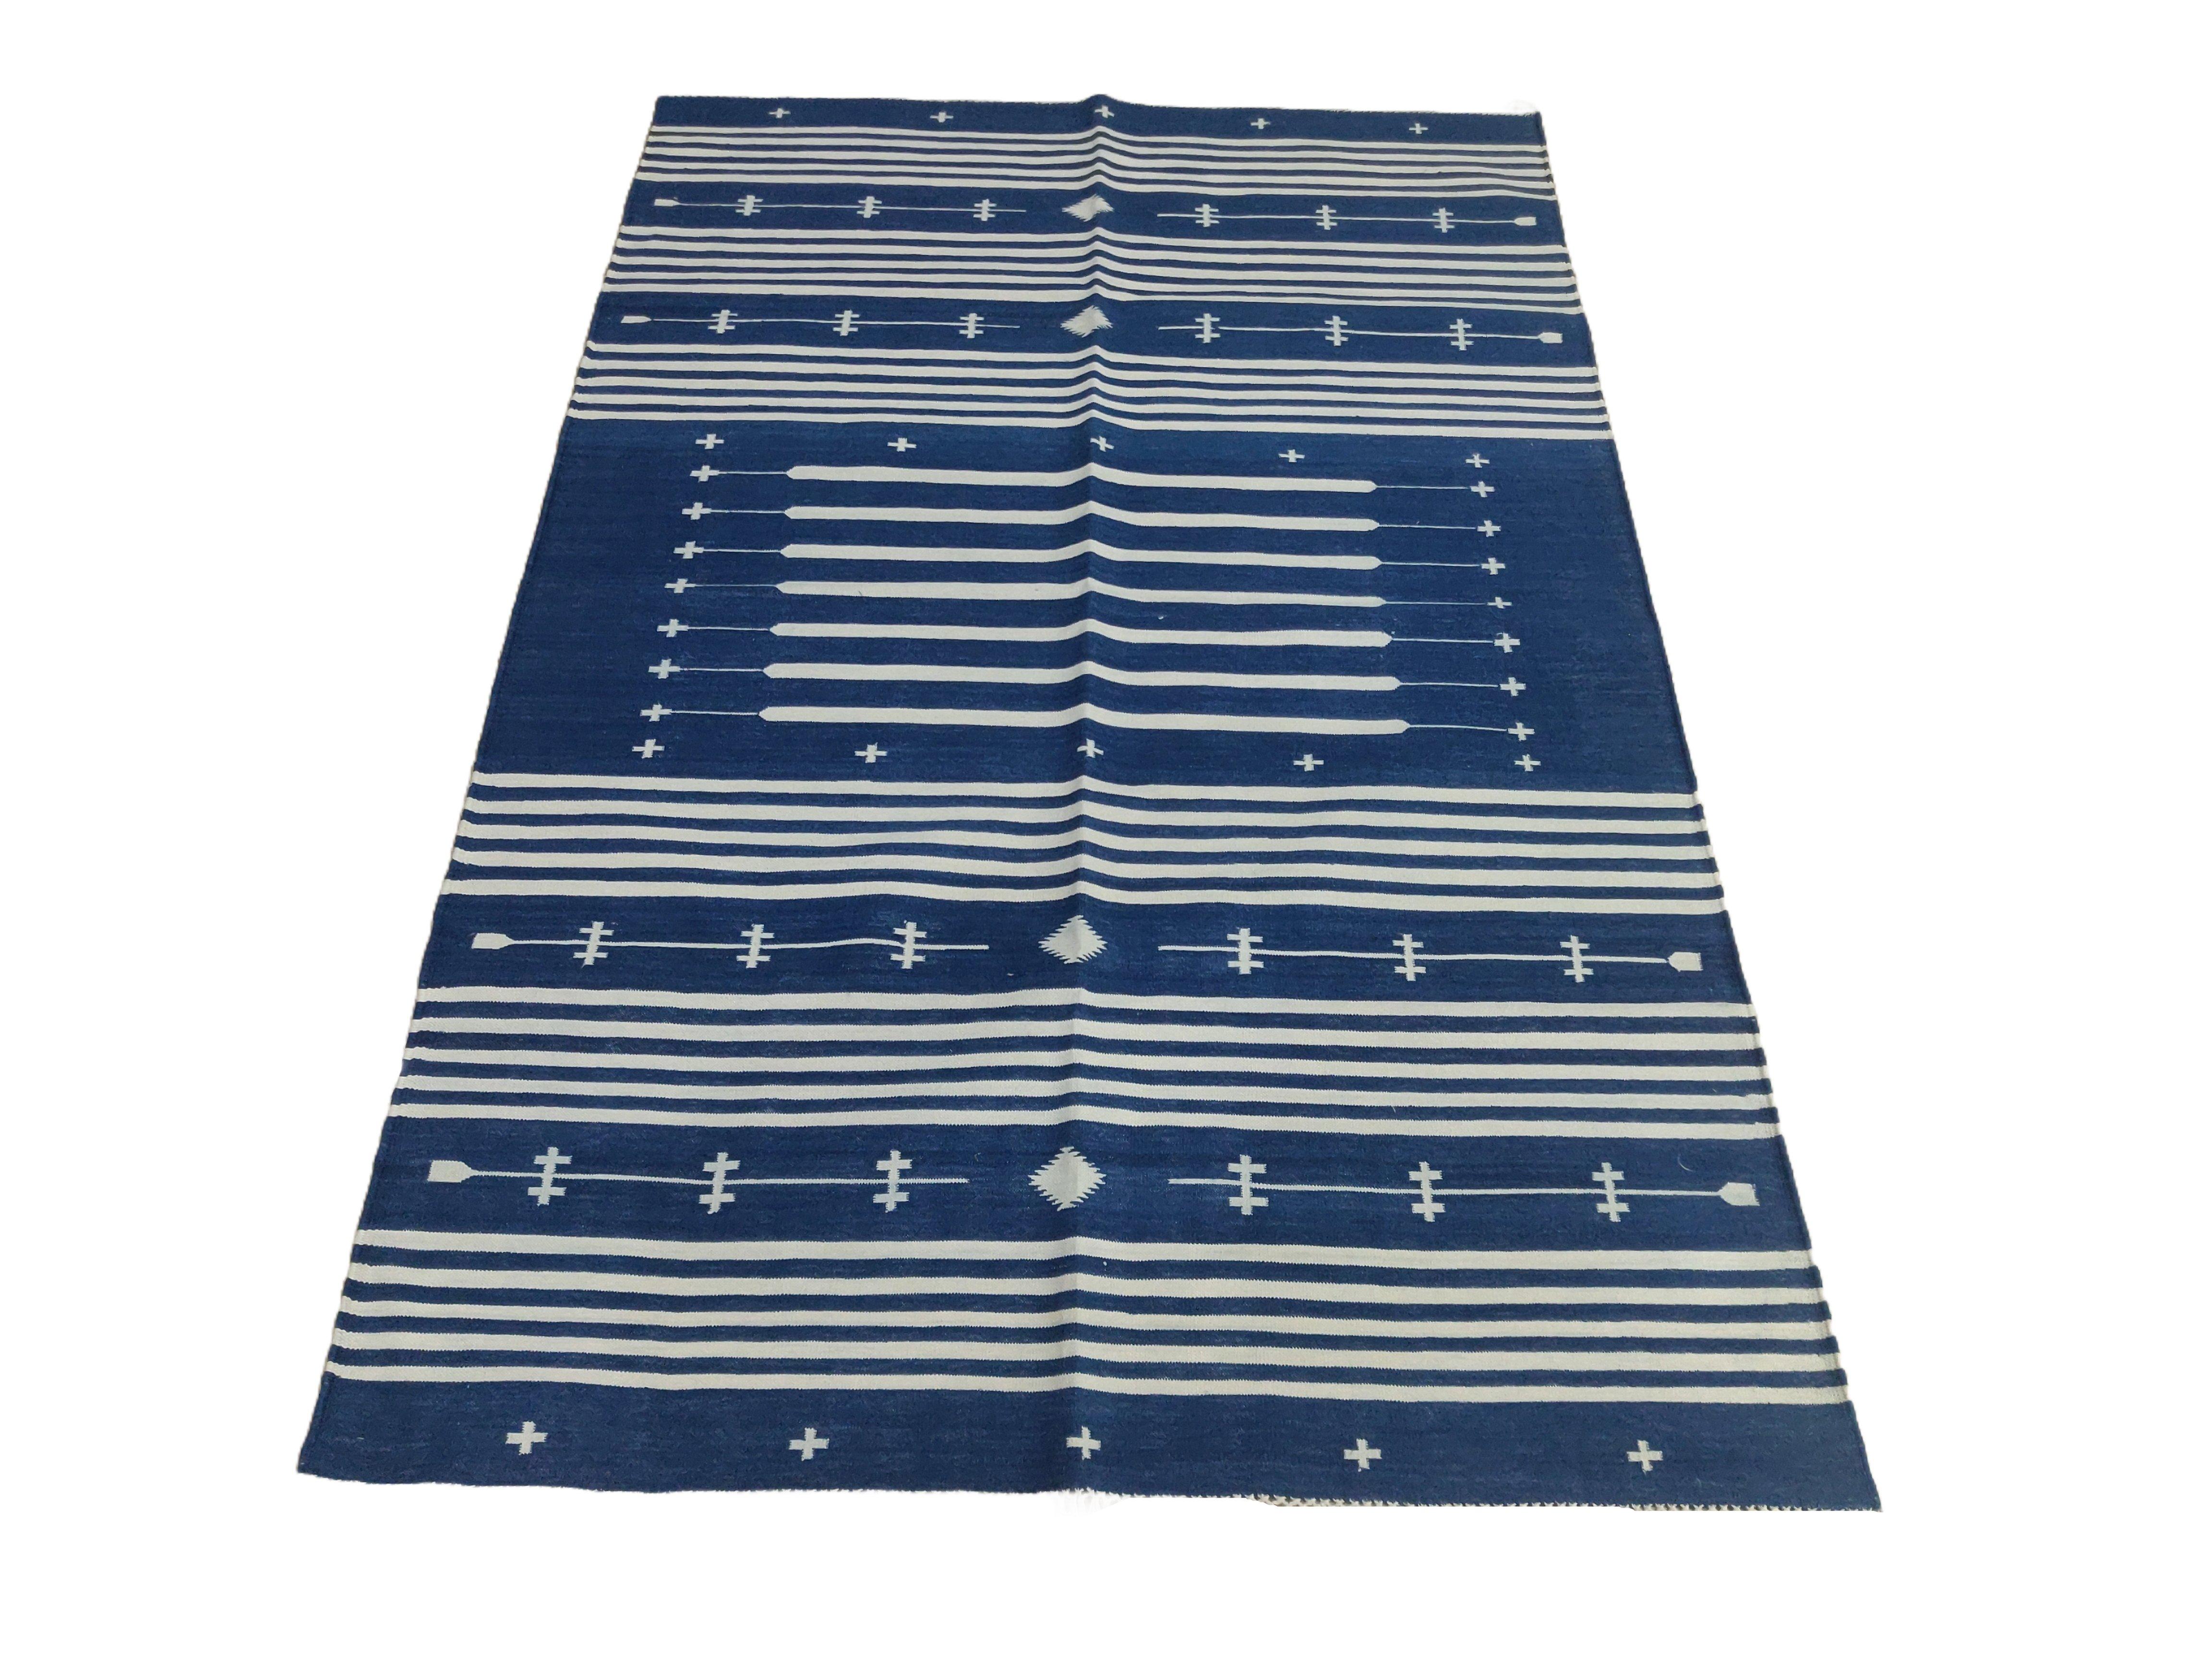 Tapis indien Dhurrie en coton teint dans la masse bleu indigo et blanc rayé-4'x6' 

Ces dhurries spéciales à tissage plat sont tissées à la main avec du fil 100 % coton 15 plis. En raison des techniques de fabrication spéciales utilisées pour créer